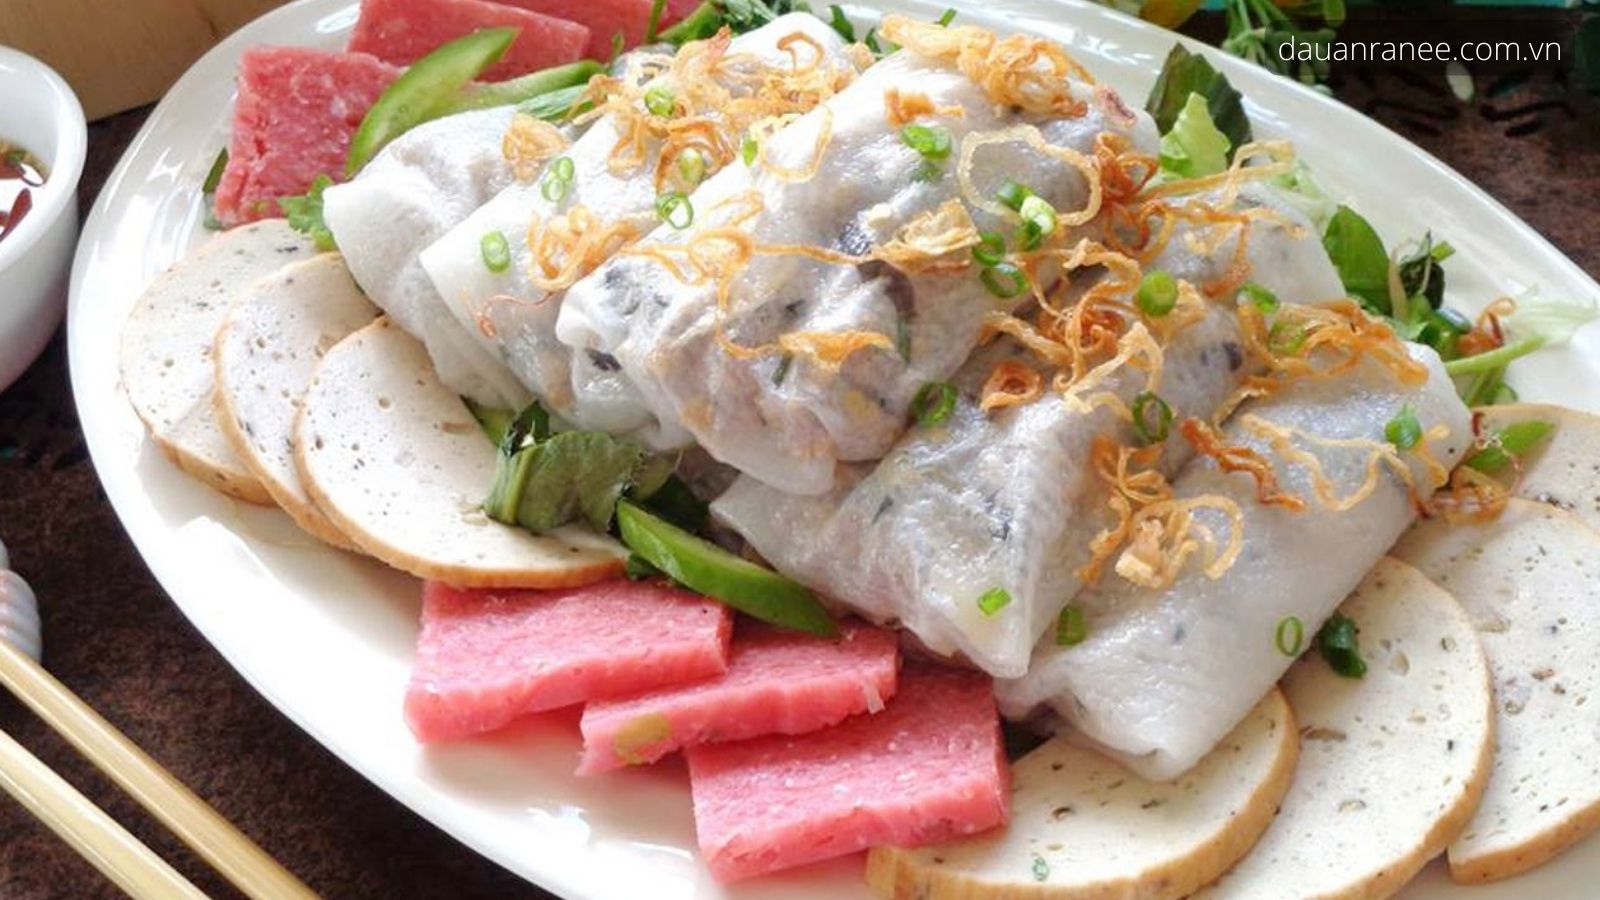 Bánh mướt Diễn Châu - Mua quà xứ Nghệ quê hương